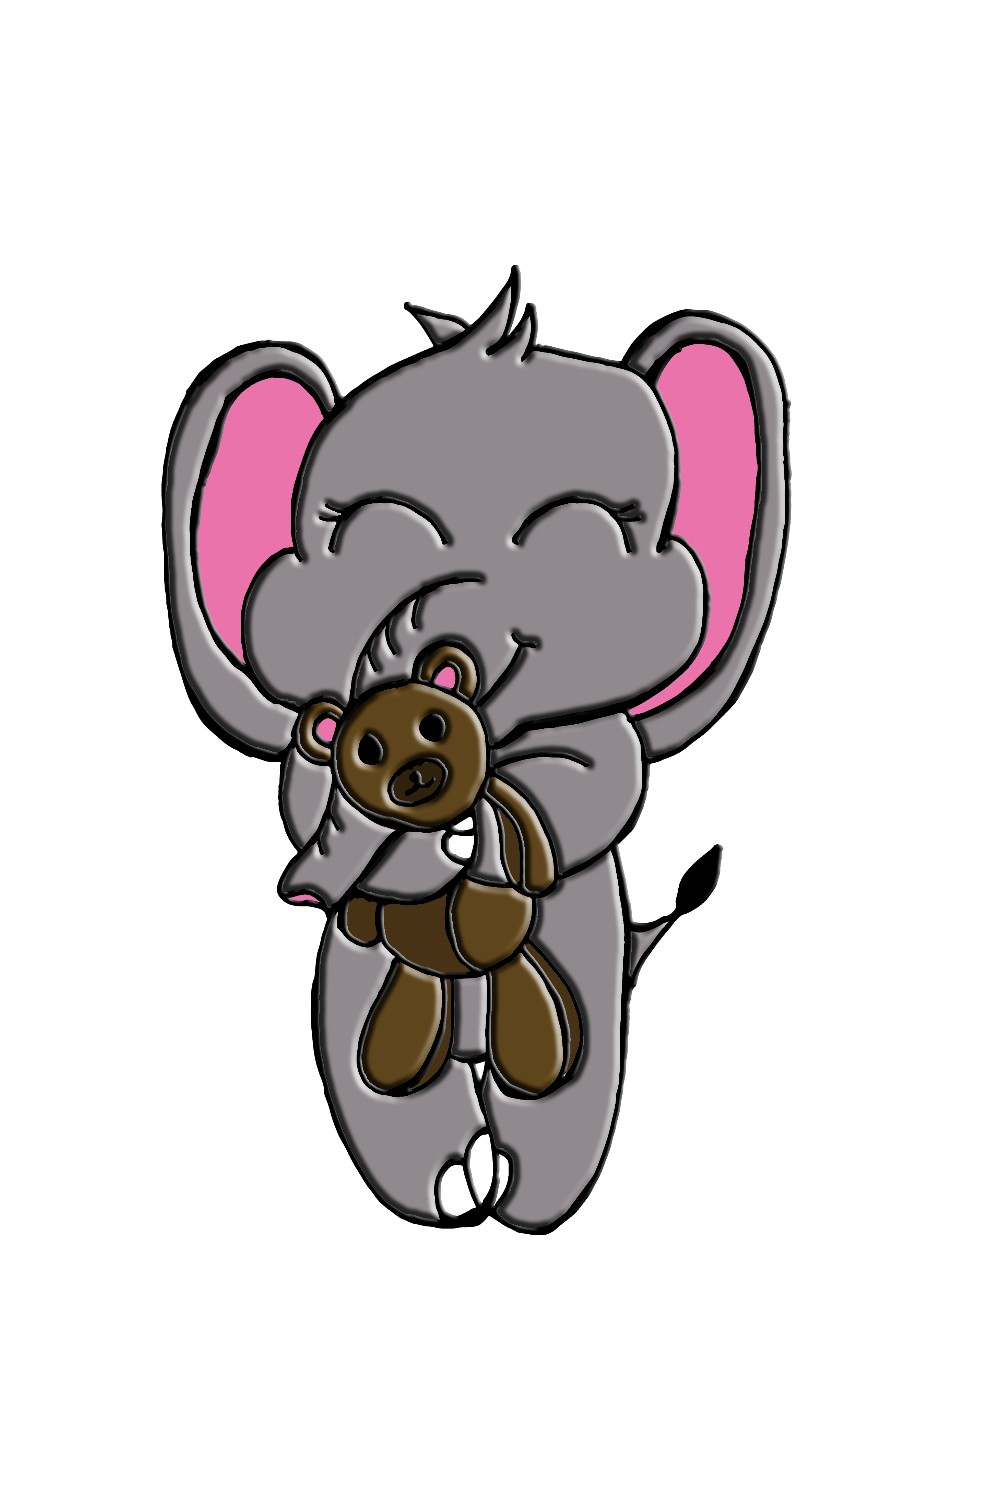 Cartoon elephant holding a teddy bear.